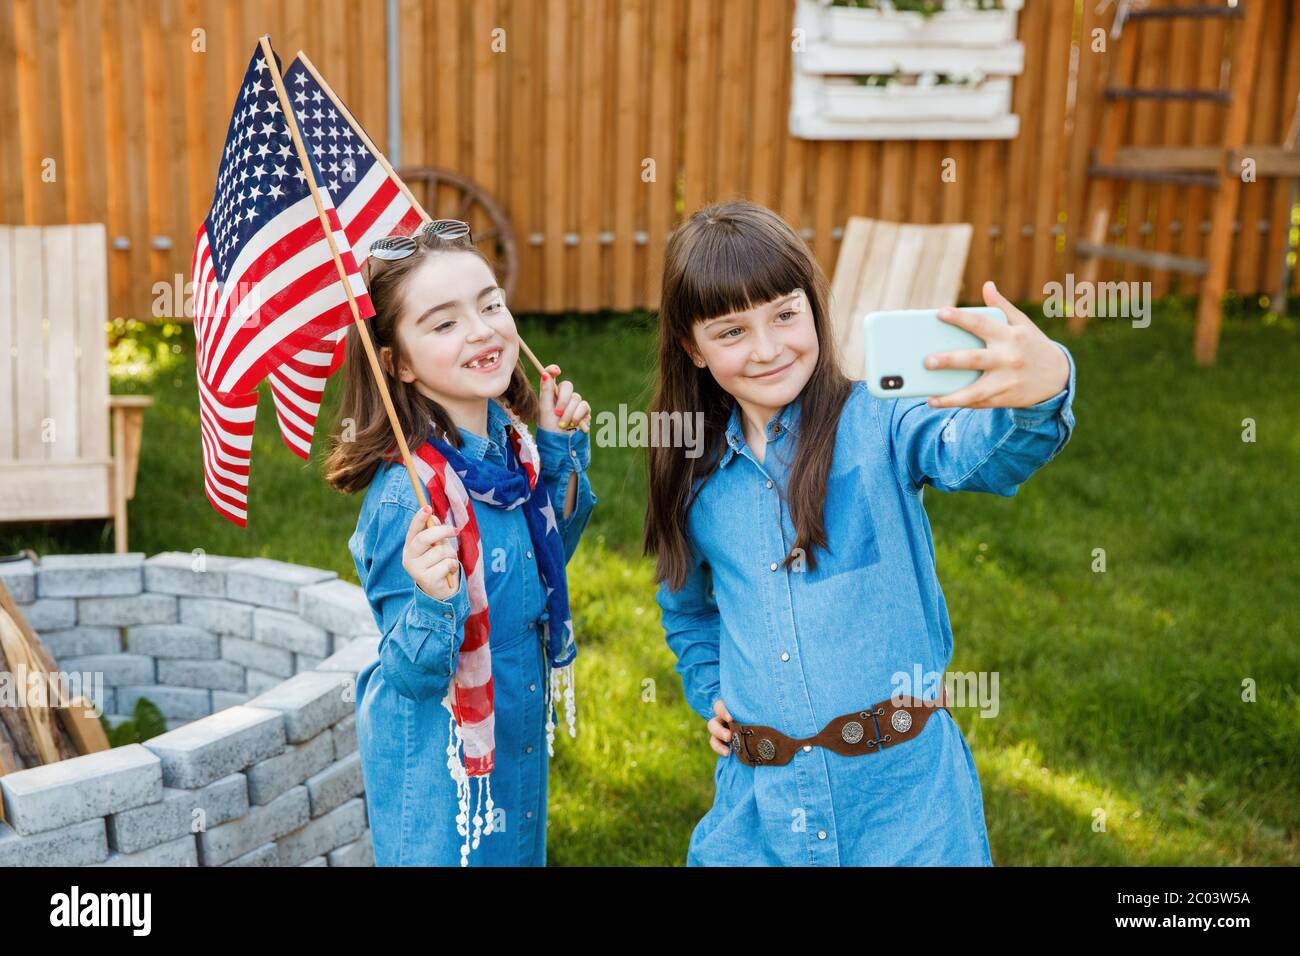 Zwei Mädchen stehen auf dem Hof, halten die Flagge der USA und fotografieren sich auf einem Handy Stockfoto